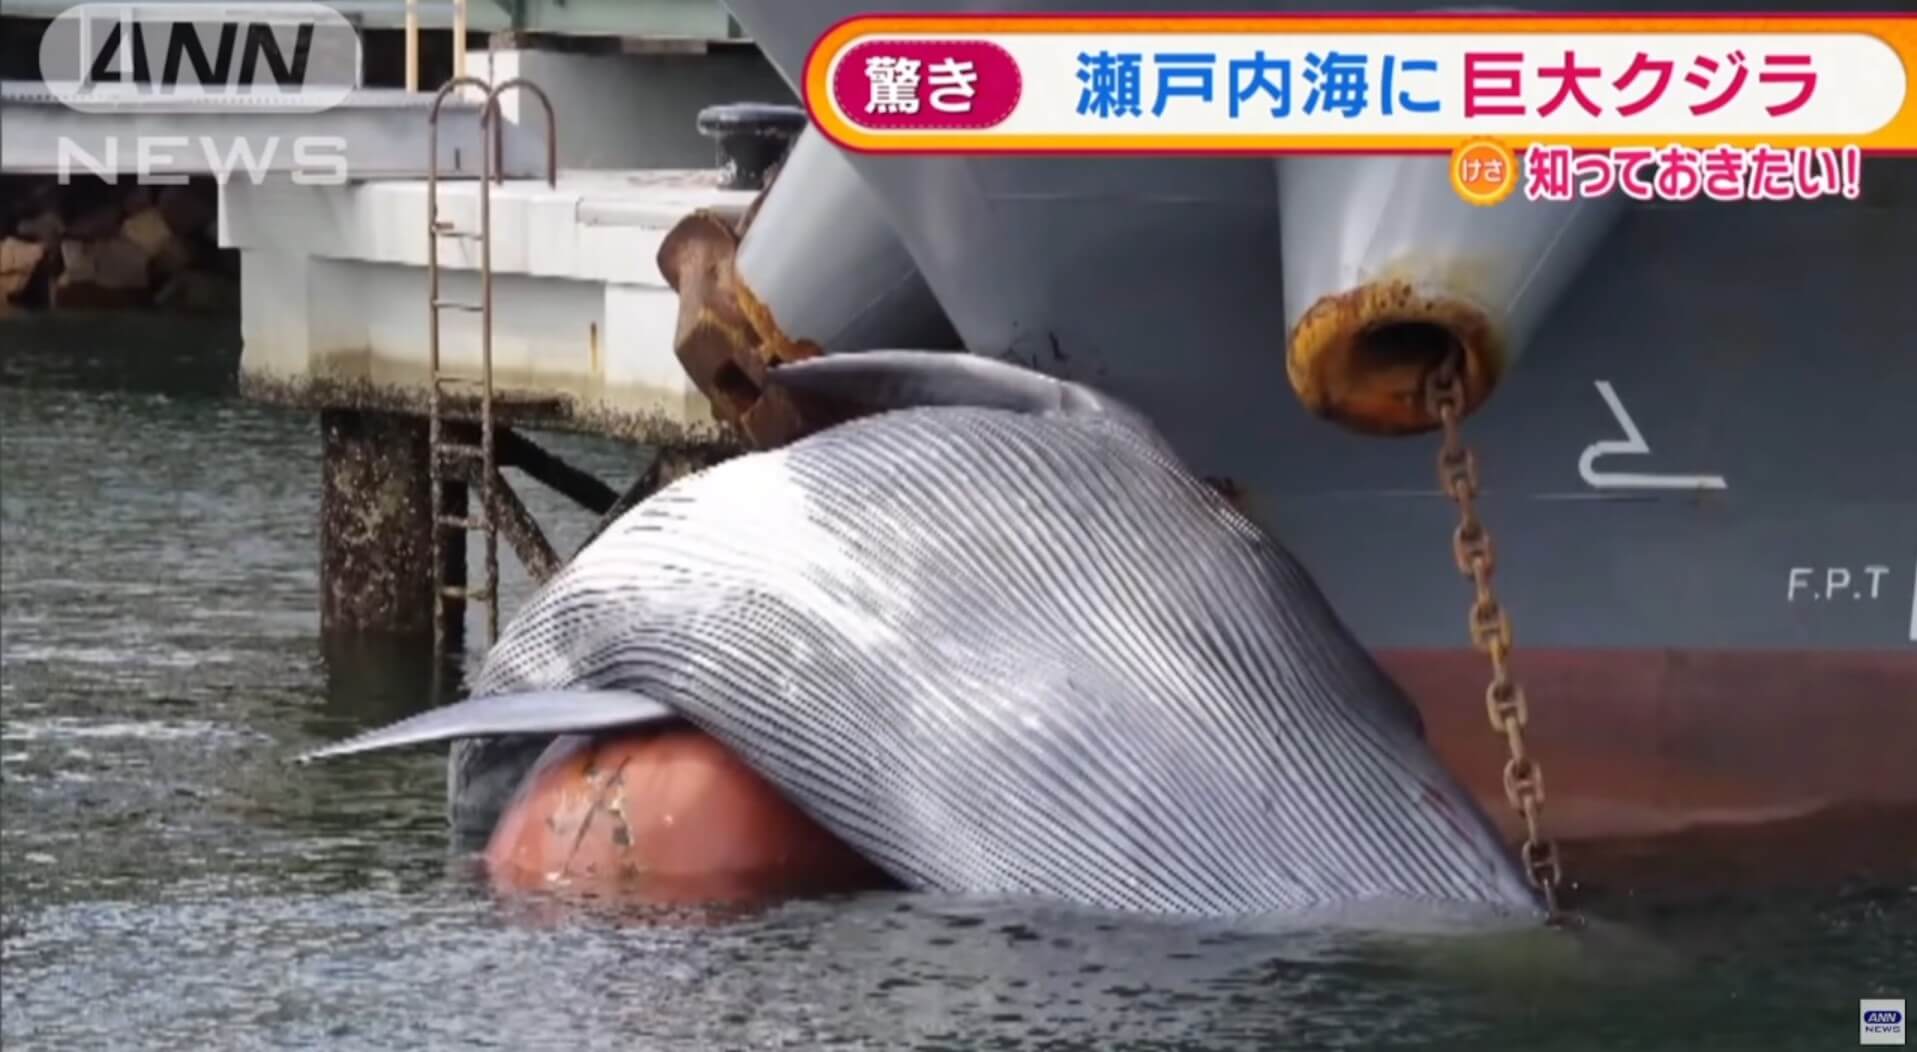 Baleia aparece pendura em proa de navio no Japão